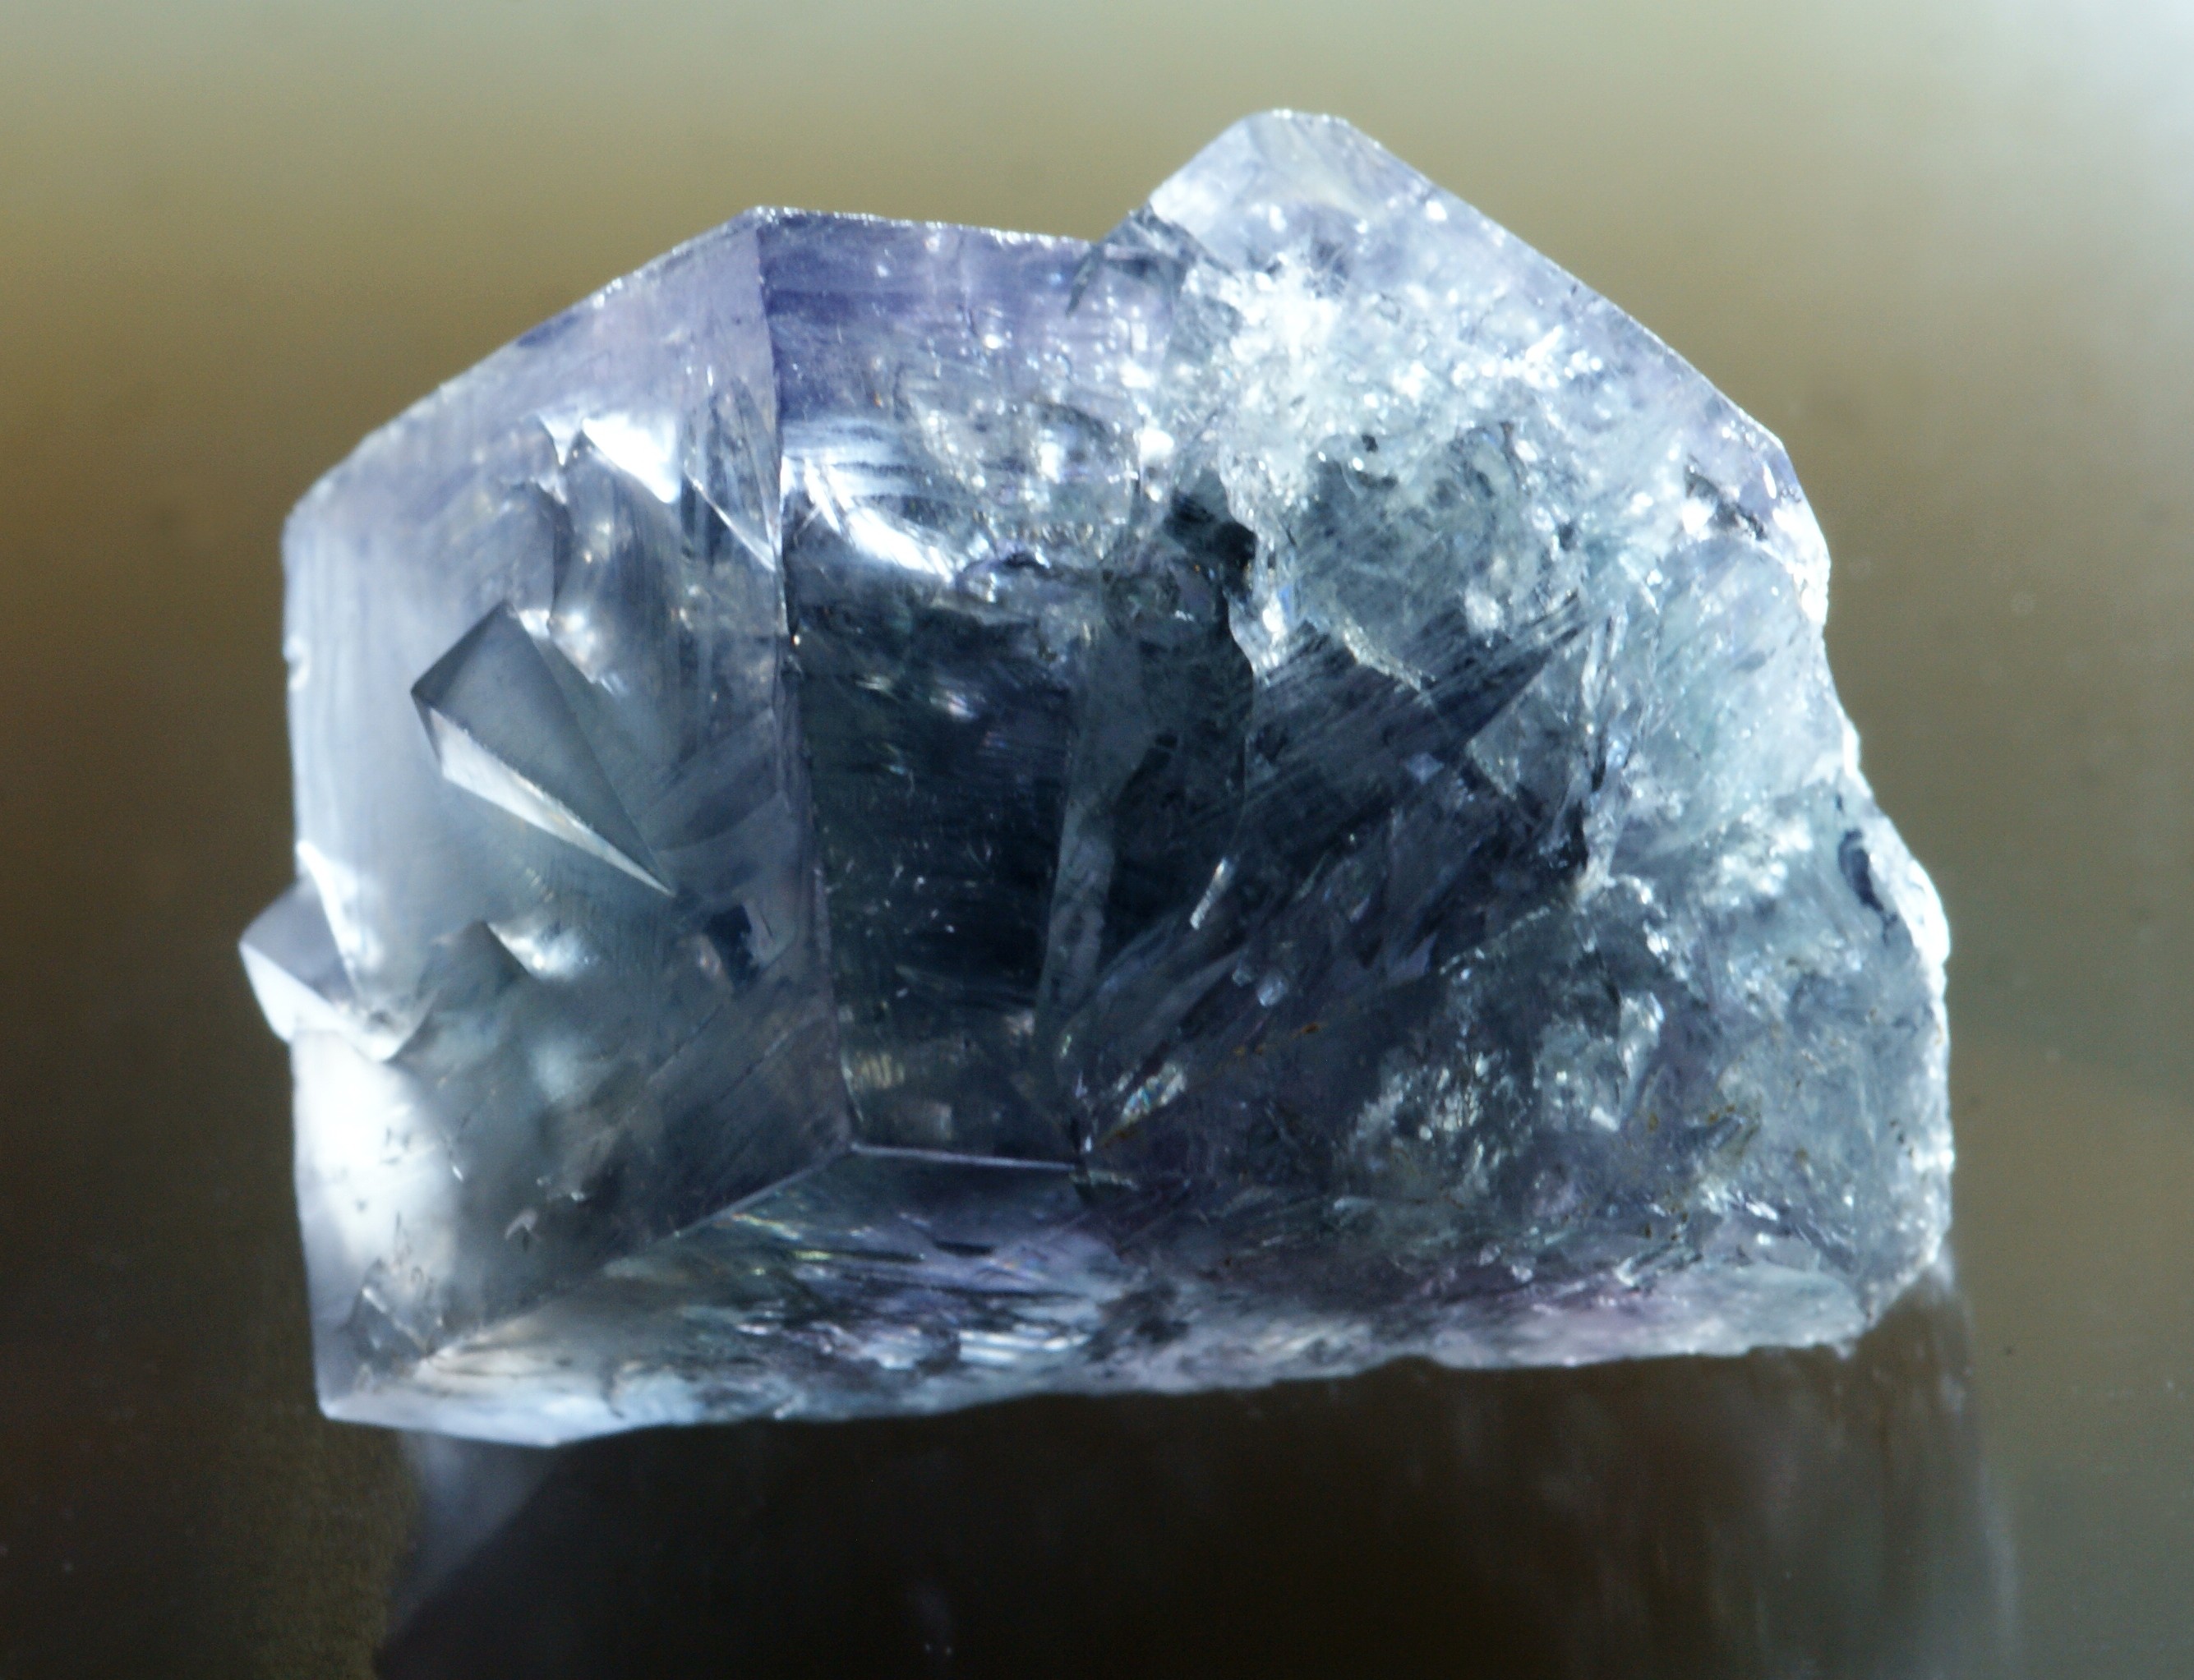 3 cm interpenetrant twin of purple fluorite from the Frazers Hush Mine, Weardale, County Durham.